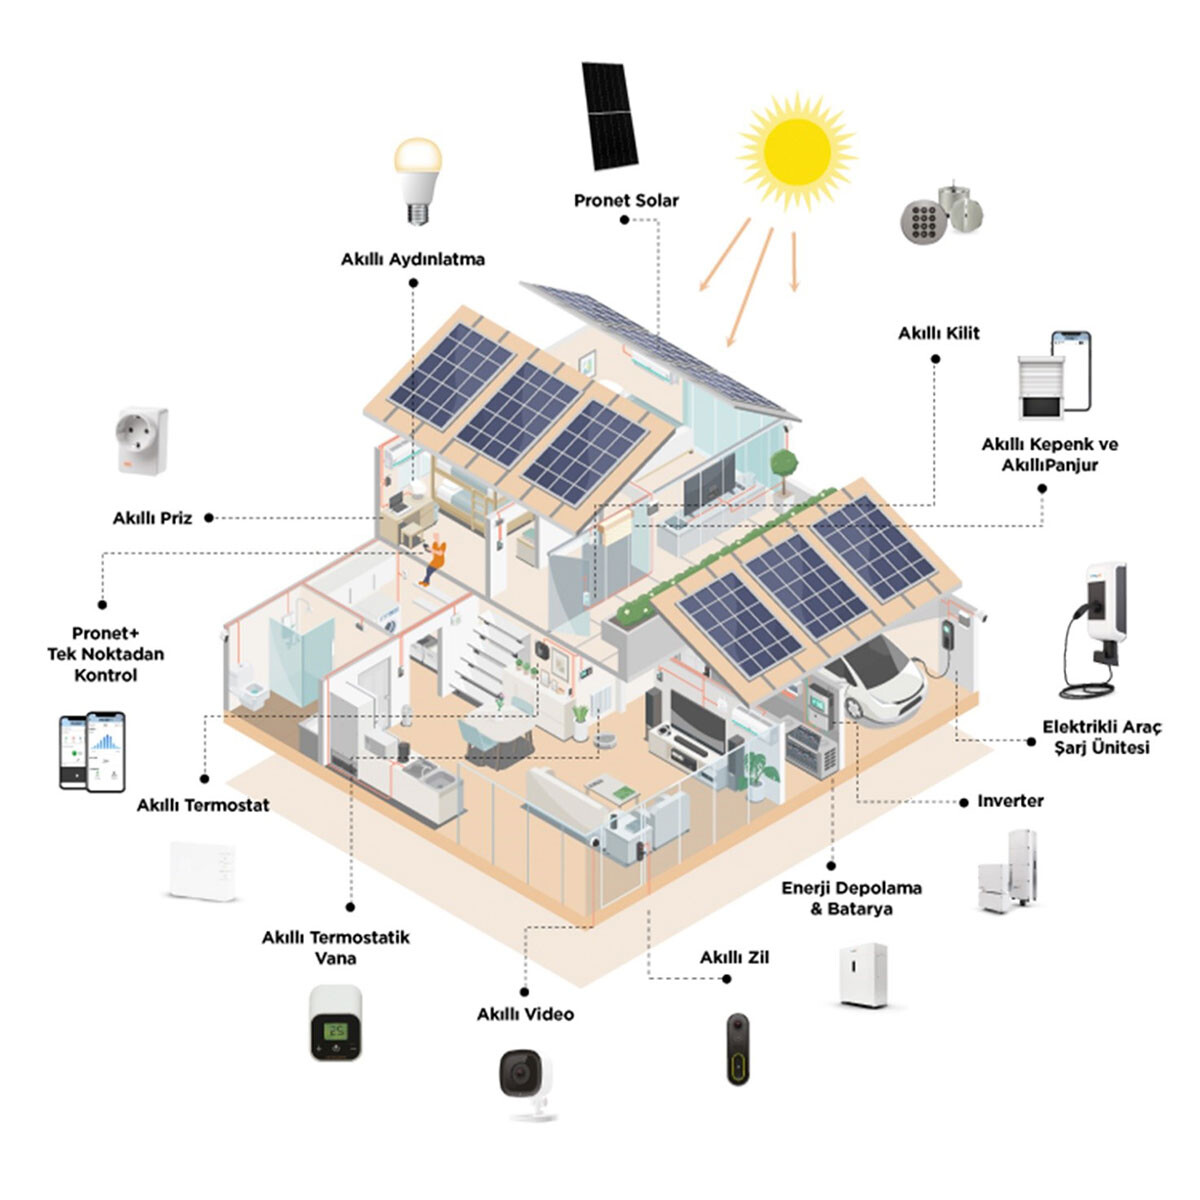 Akıllı Evler Pronet Solar ile Değerleniyor!  